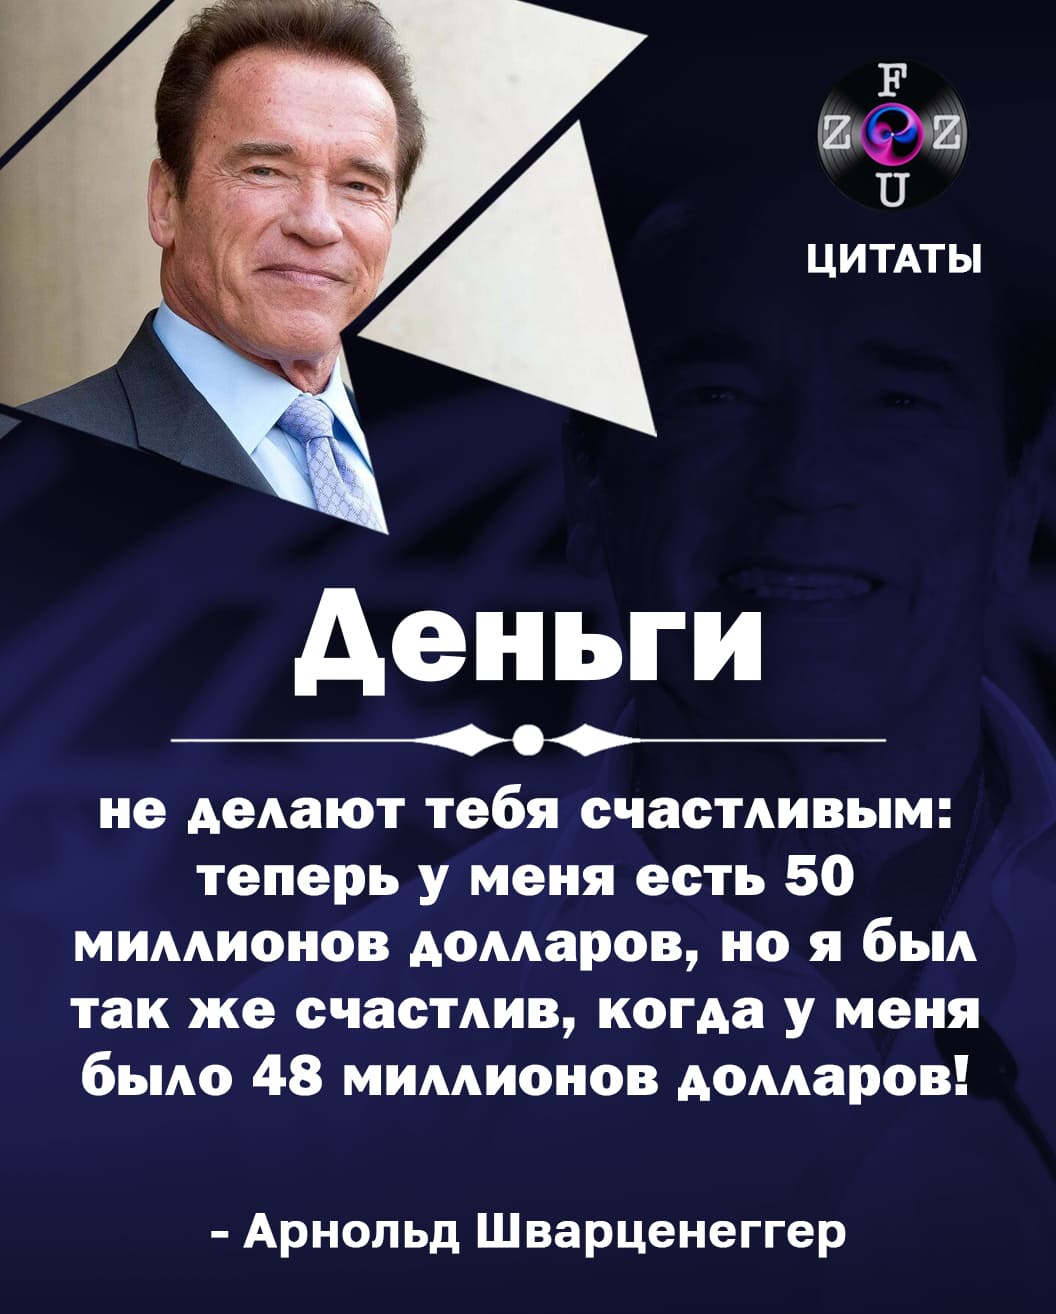 Citations d'Arnold Schwarzenegger